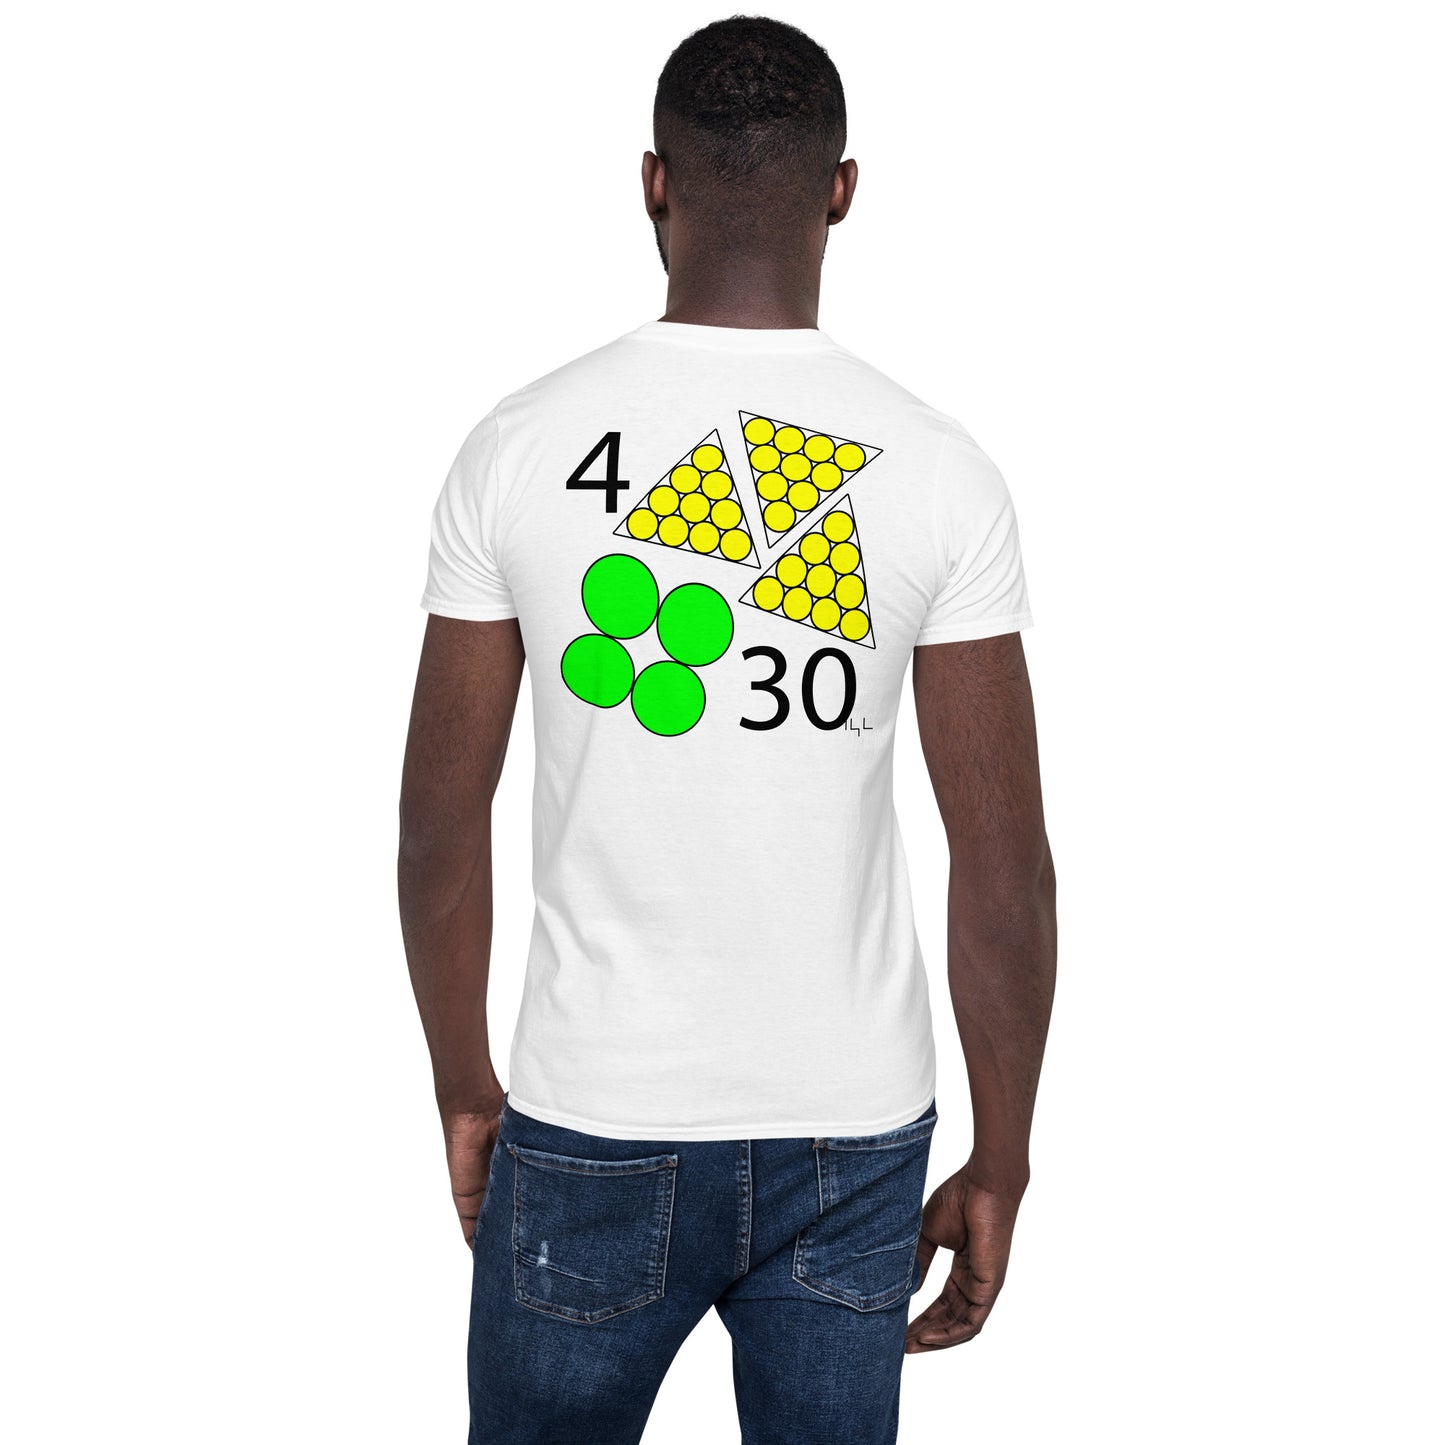 April 30th Green T-Shirt at 4:30 0430 430